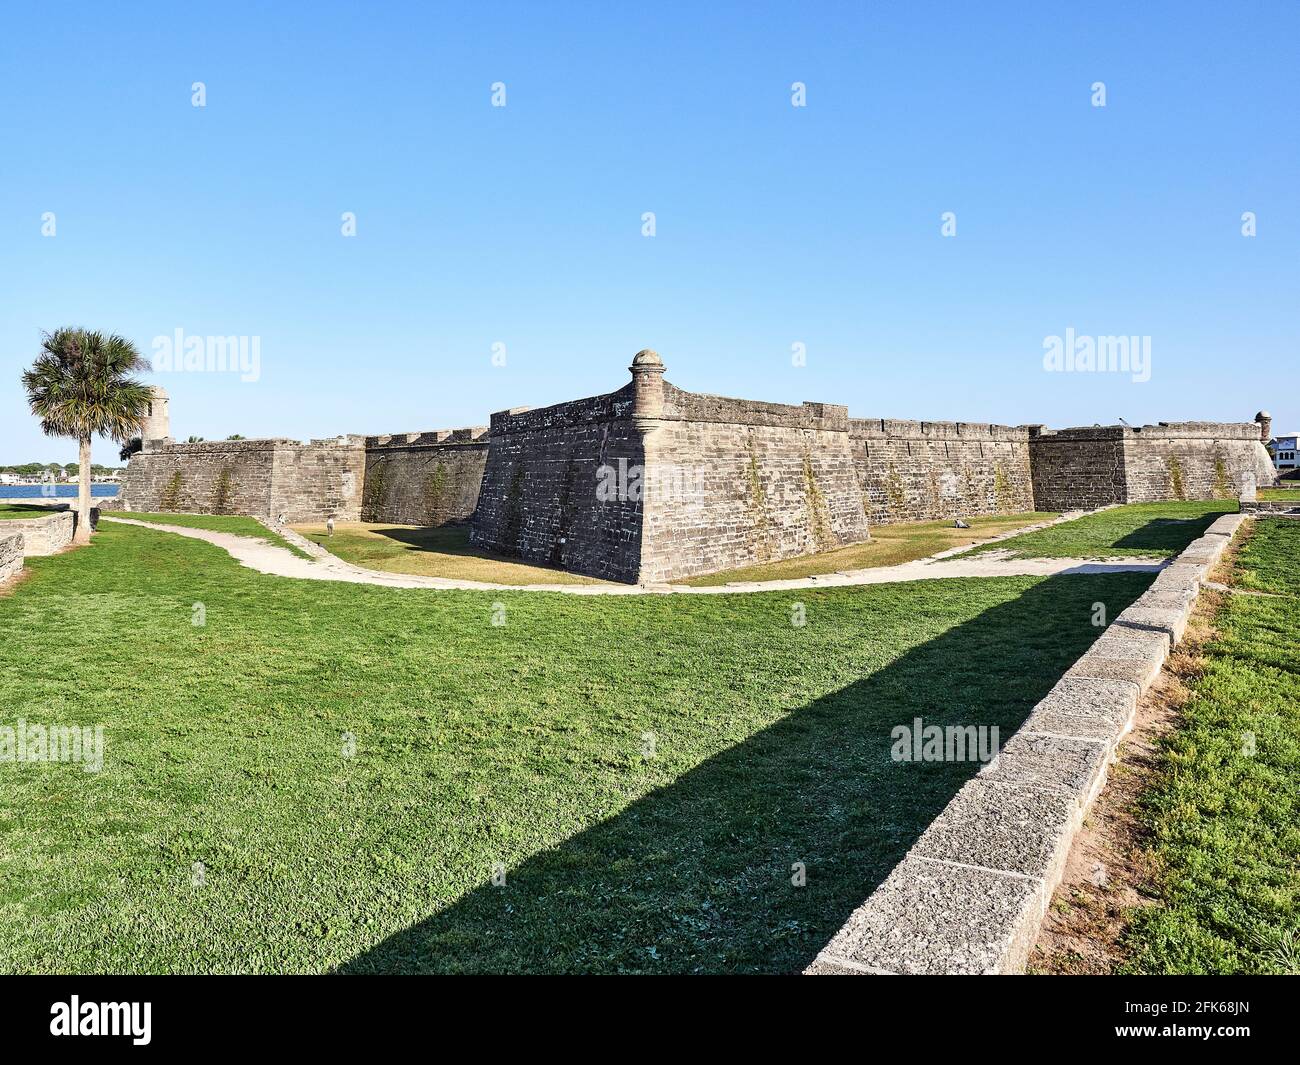 Castillo de San Marcos Una gran fortaleza o fortaleza de piedra española construida en el siglo XVII protege el puerto en St. Augustine, Florida, Estados Unidos. Foto de stock